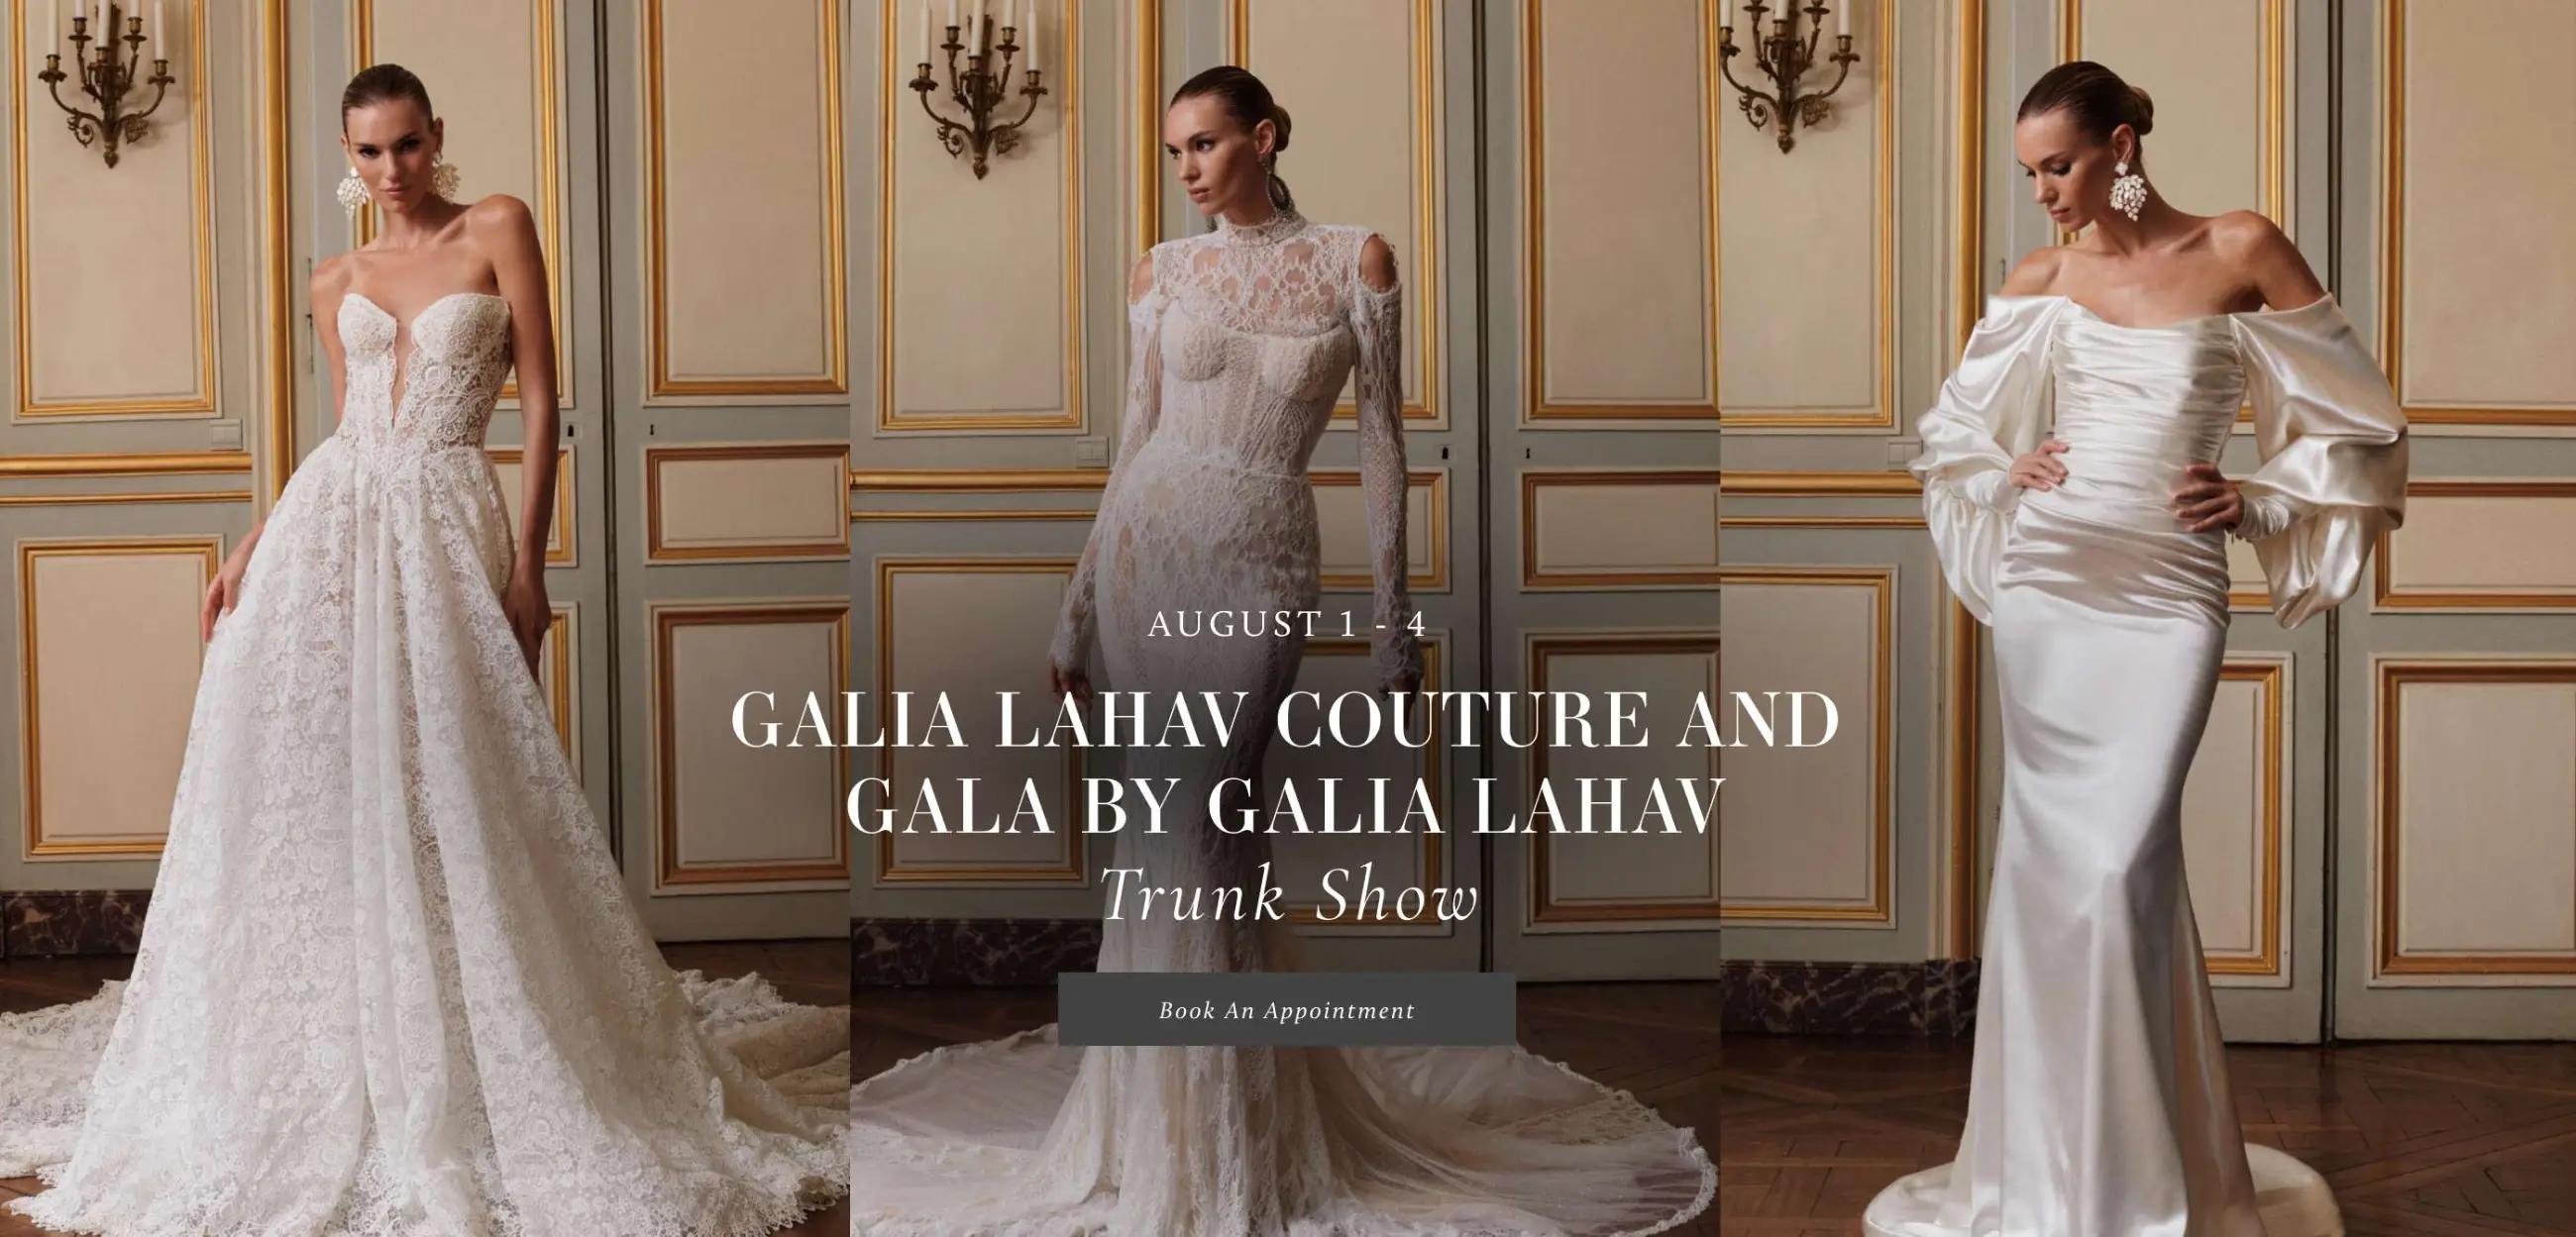 Gala By Galia Lahav Trunk Show